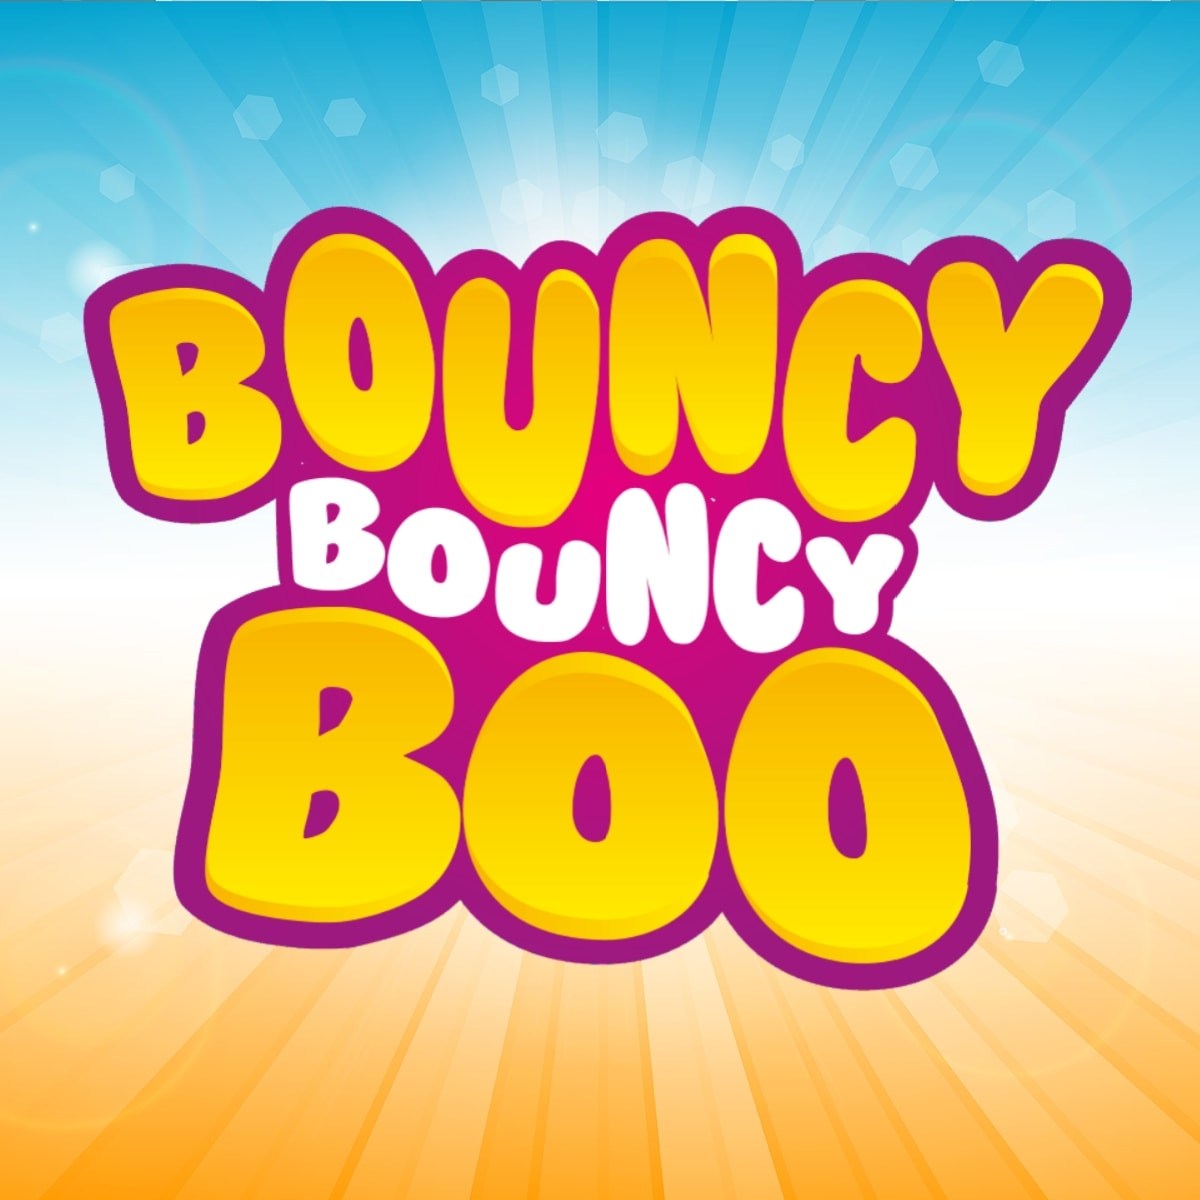 Bouncy bouncy boo castle hire's logo